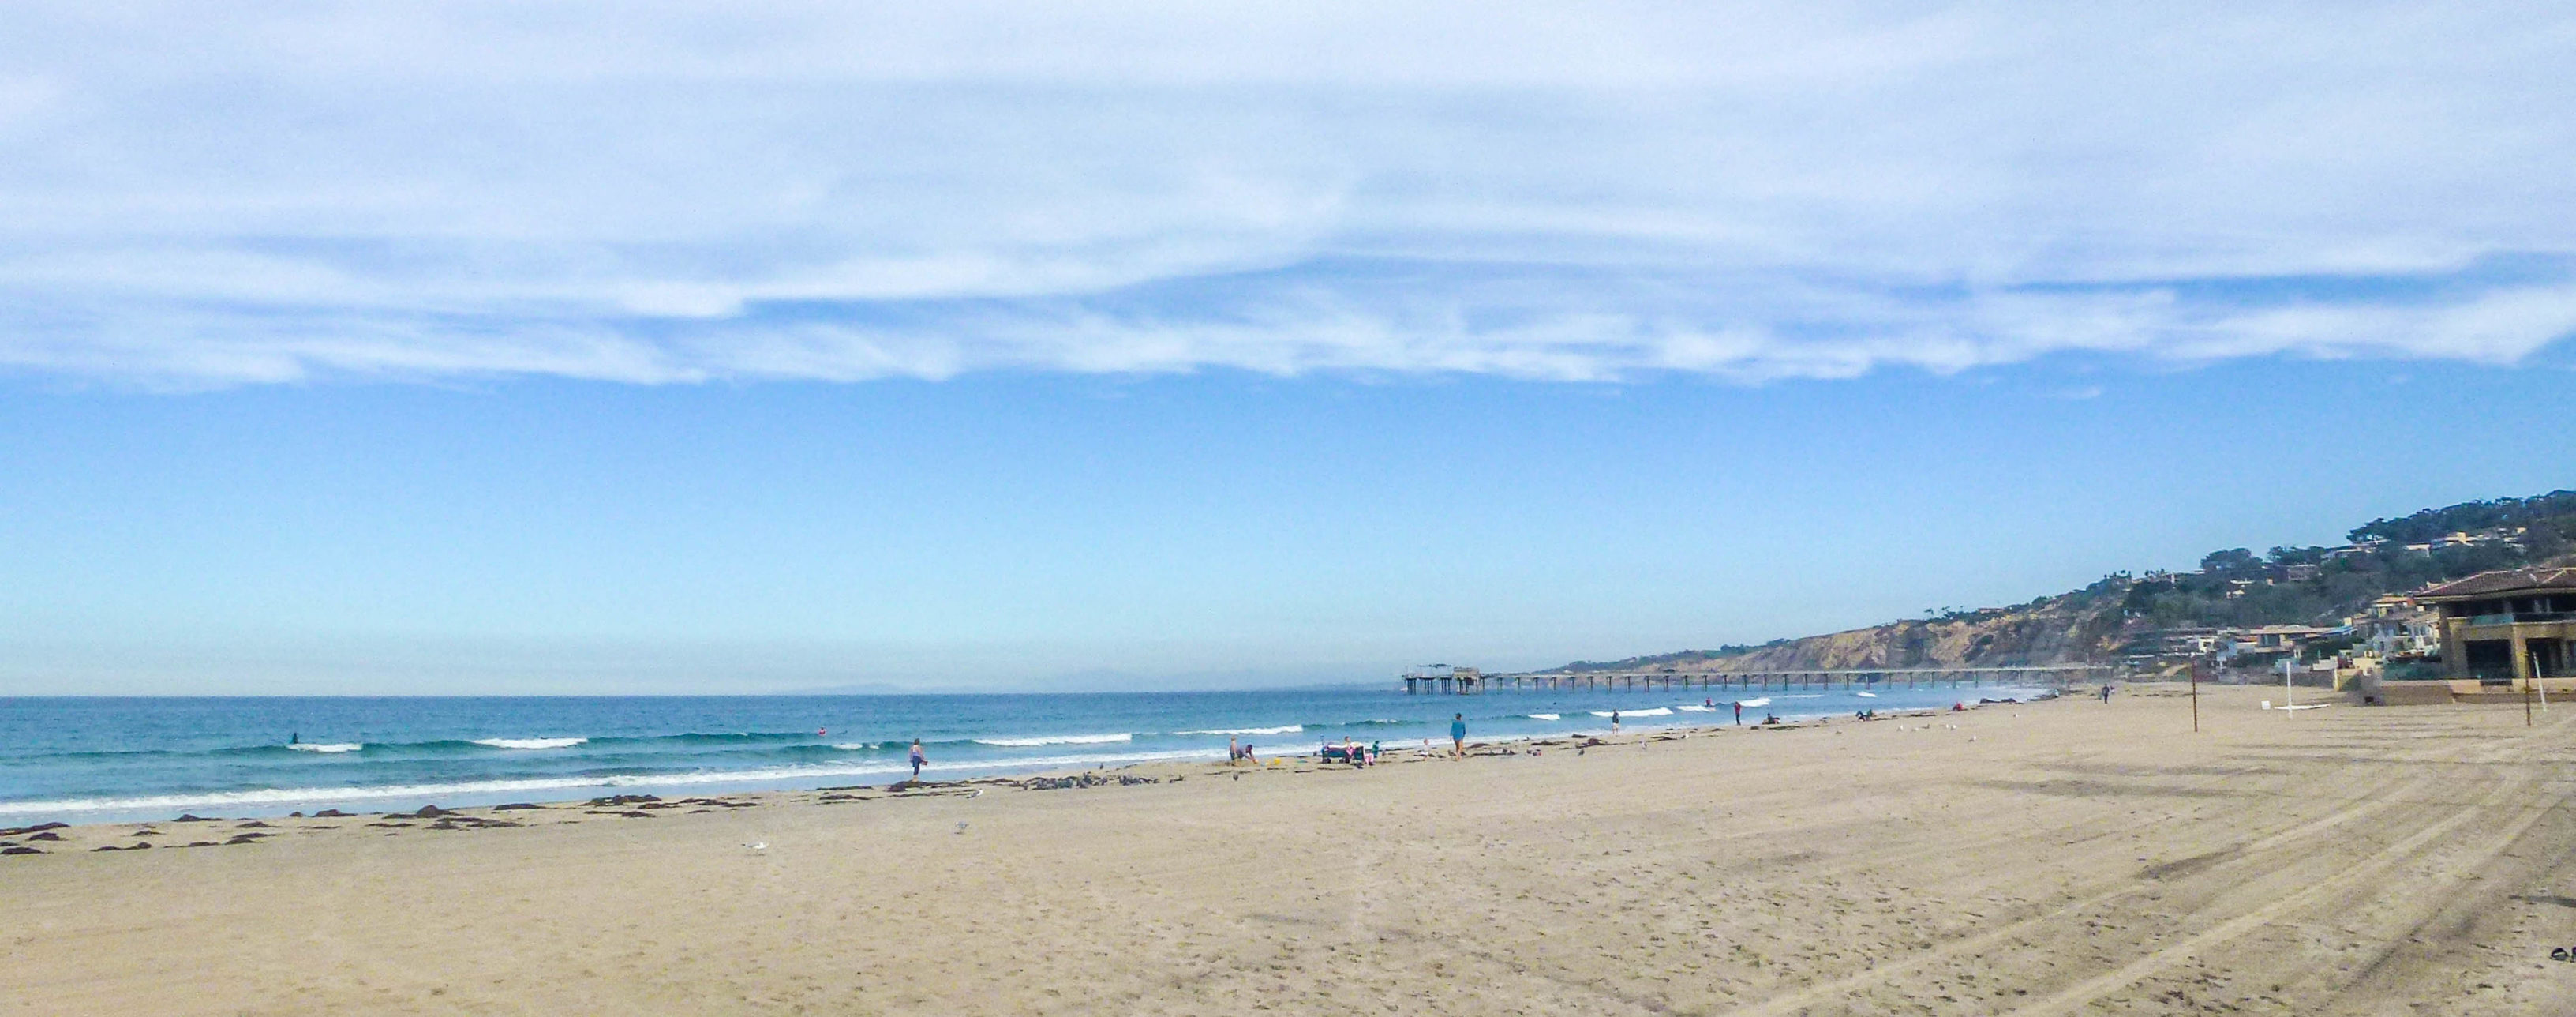 קליפורניה חלק א: סן דייגו- La Jolla beach 